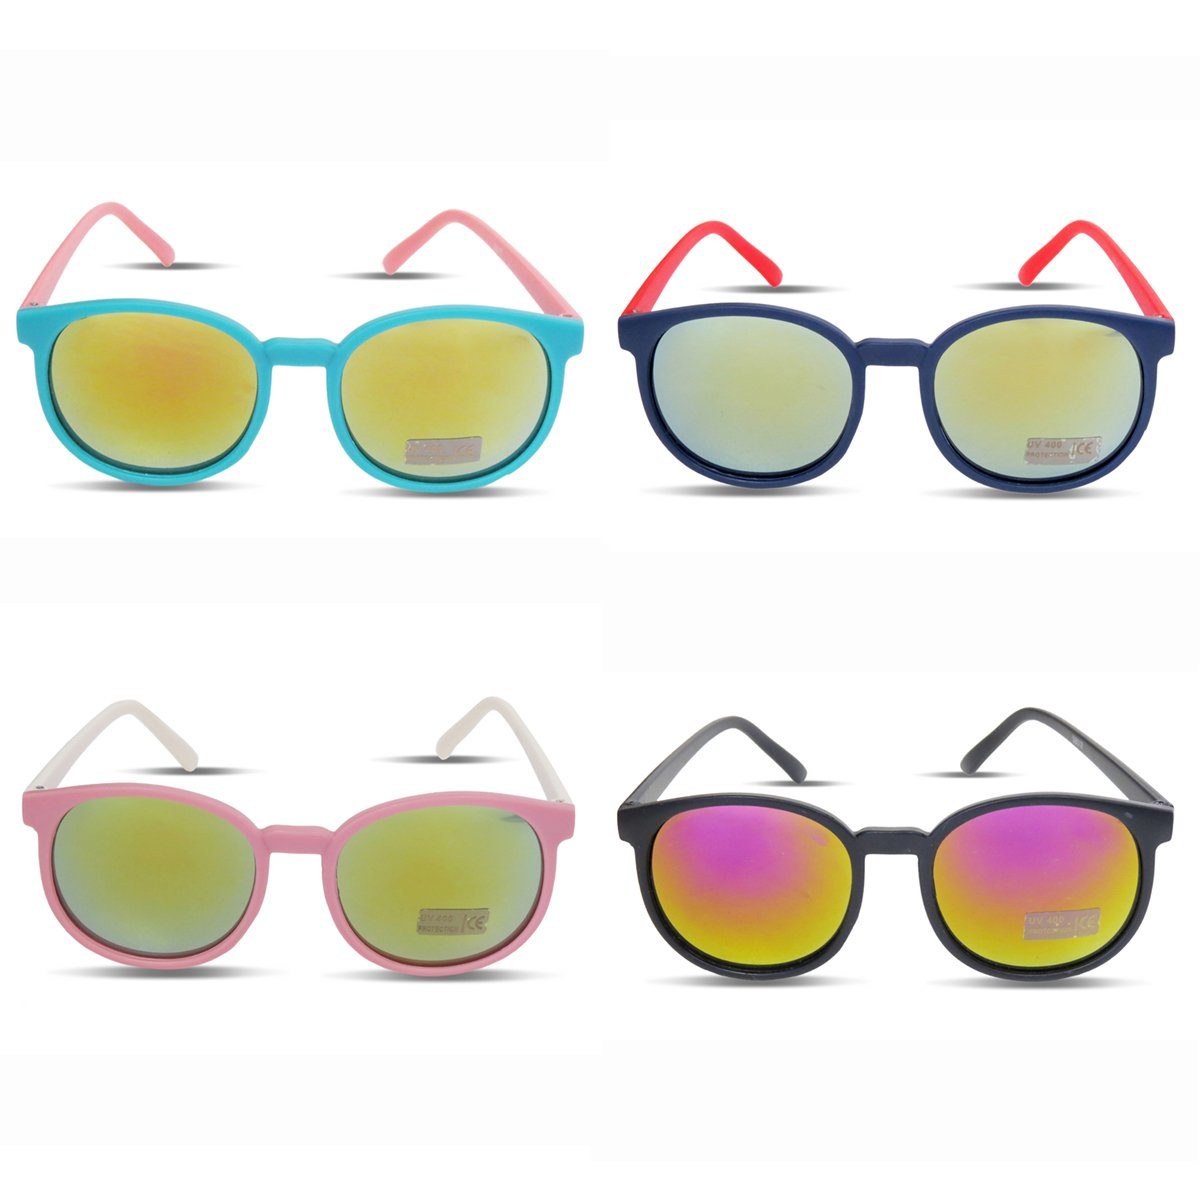 Originelli Sommer Sonnenbrille Trend Onesize Partybrille rosa-weiss Sonnenbrille Verspiegelt Sonia